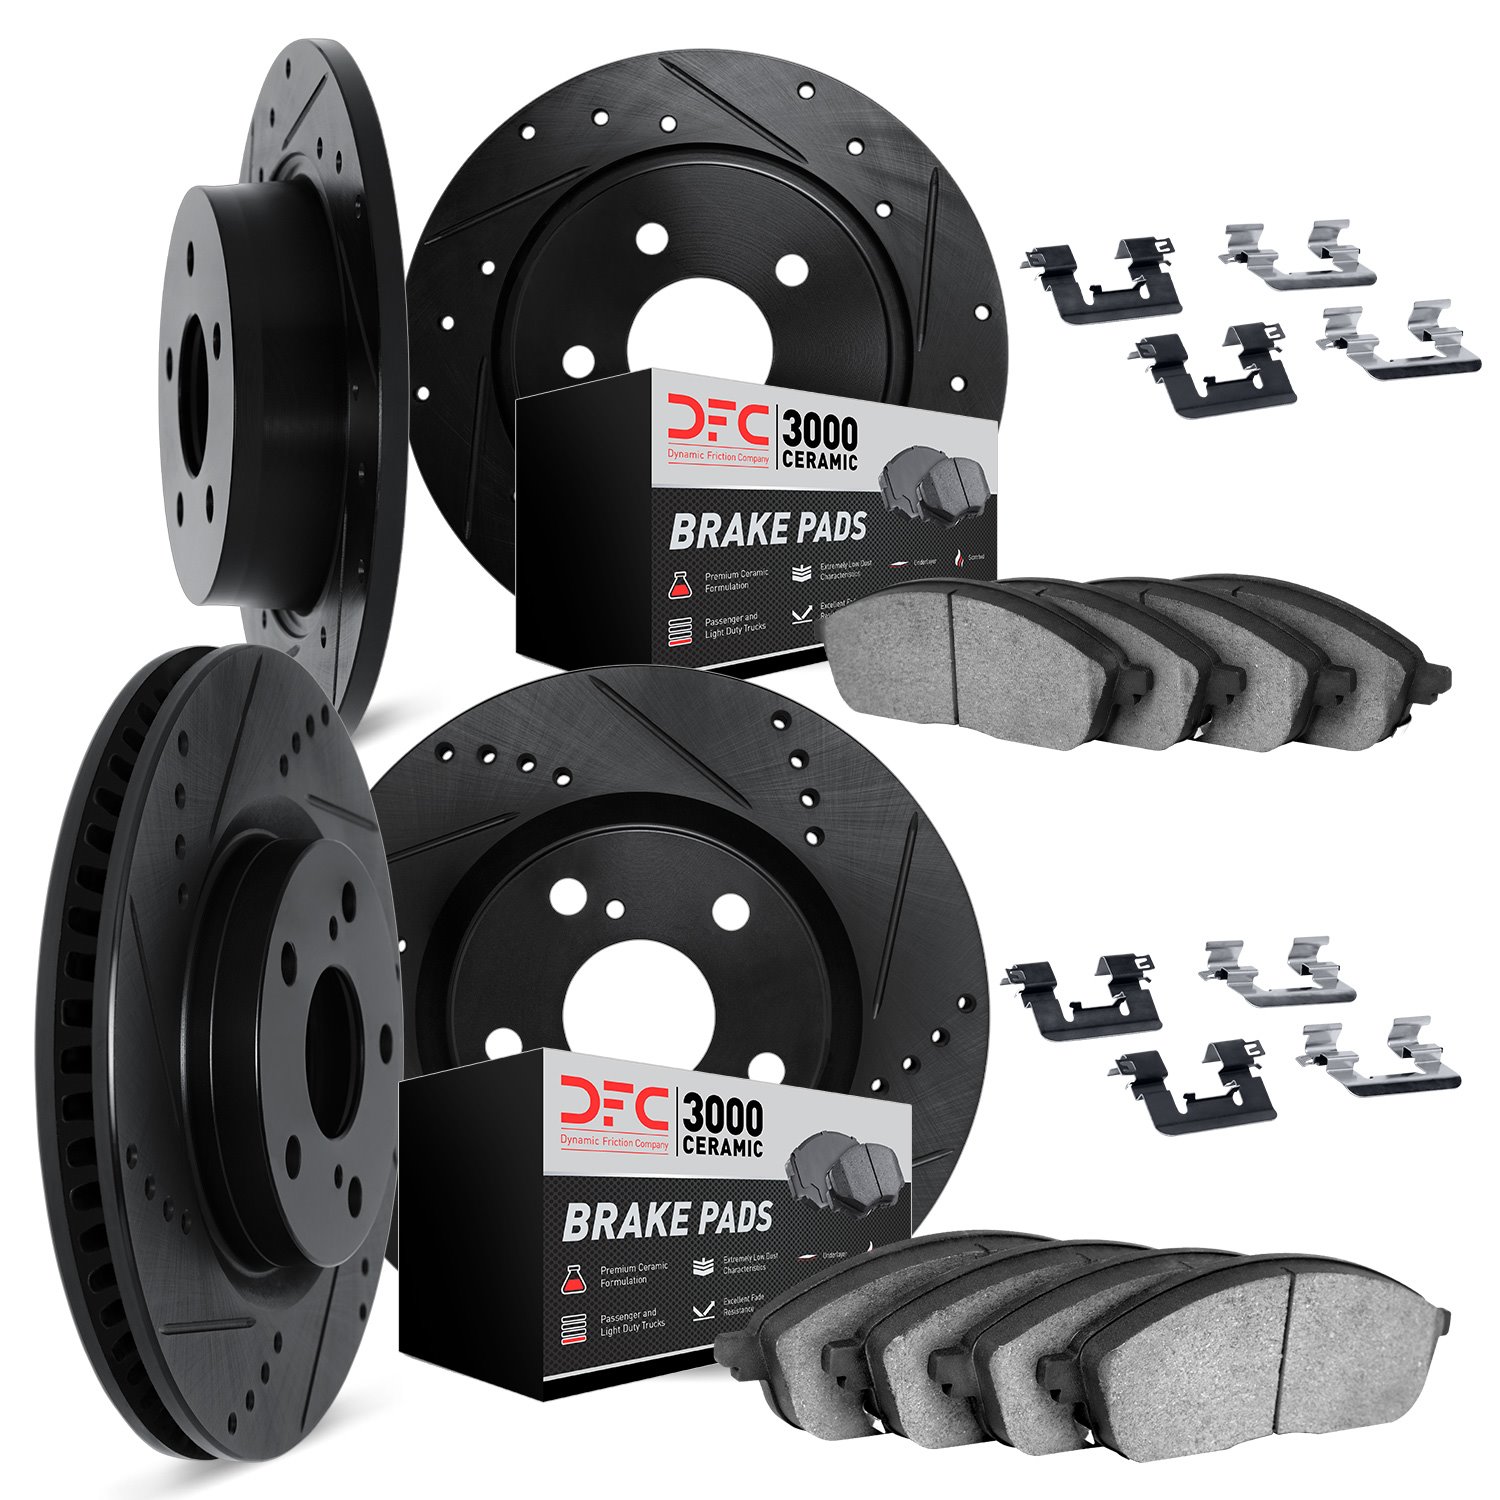 8314-76074 Drilled/Slotted Brake Rotors with 3000-Series Ceramic Brake Pads Kit & Hardware [Black], 2014-2015 Lexus/Toyota/Scion